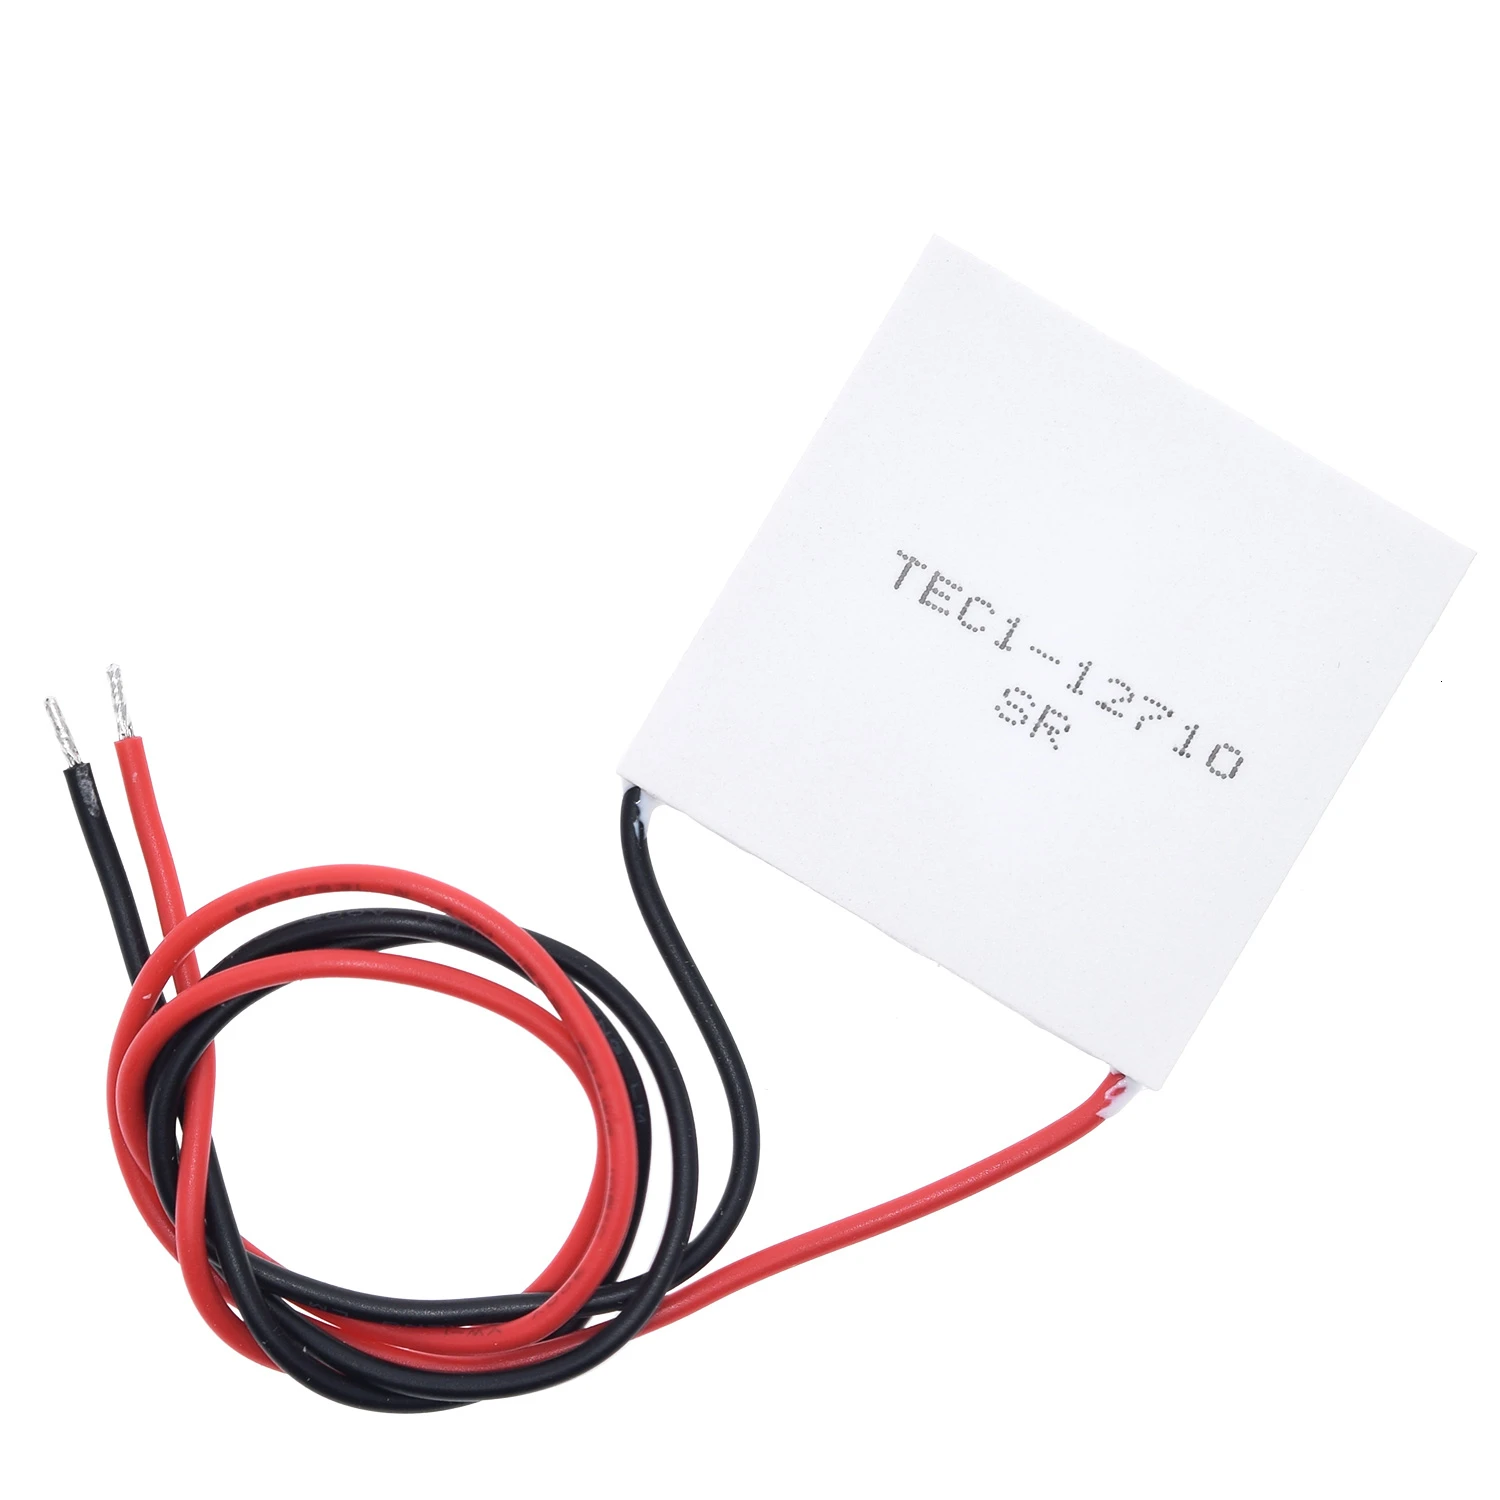 TEC1-12705 Термоэлектрический охладитель Пельтье TEC1-12706 TEC1-12710 TEC1-12715 40*40 мм 12V Пельтье Elemente модуль